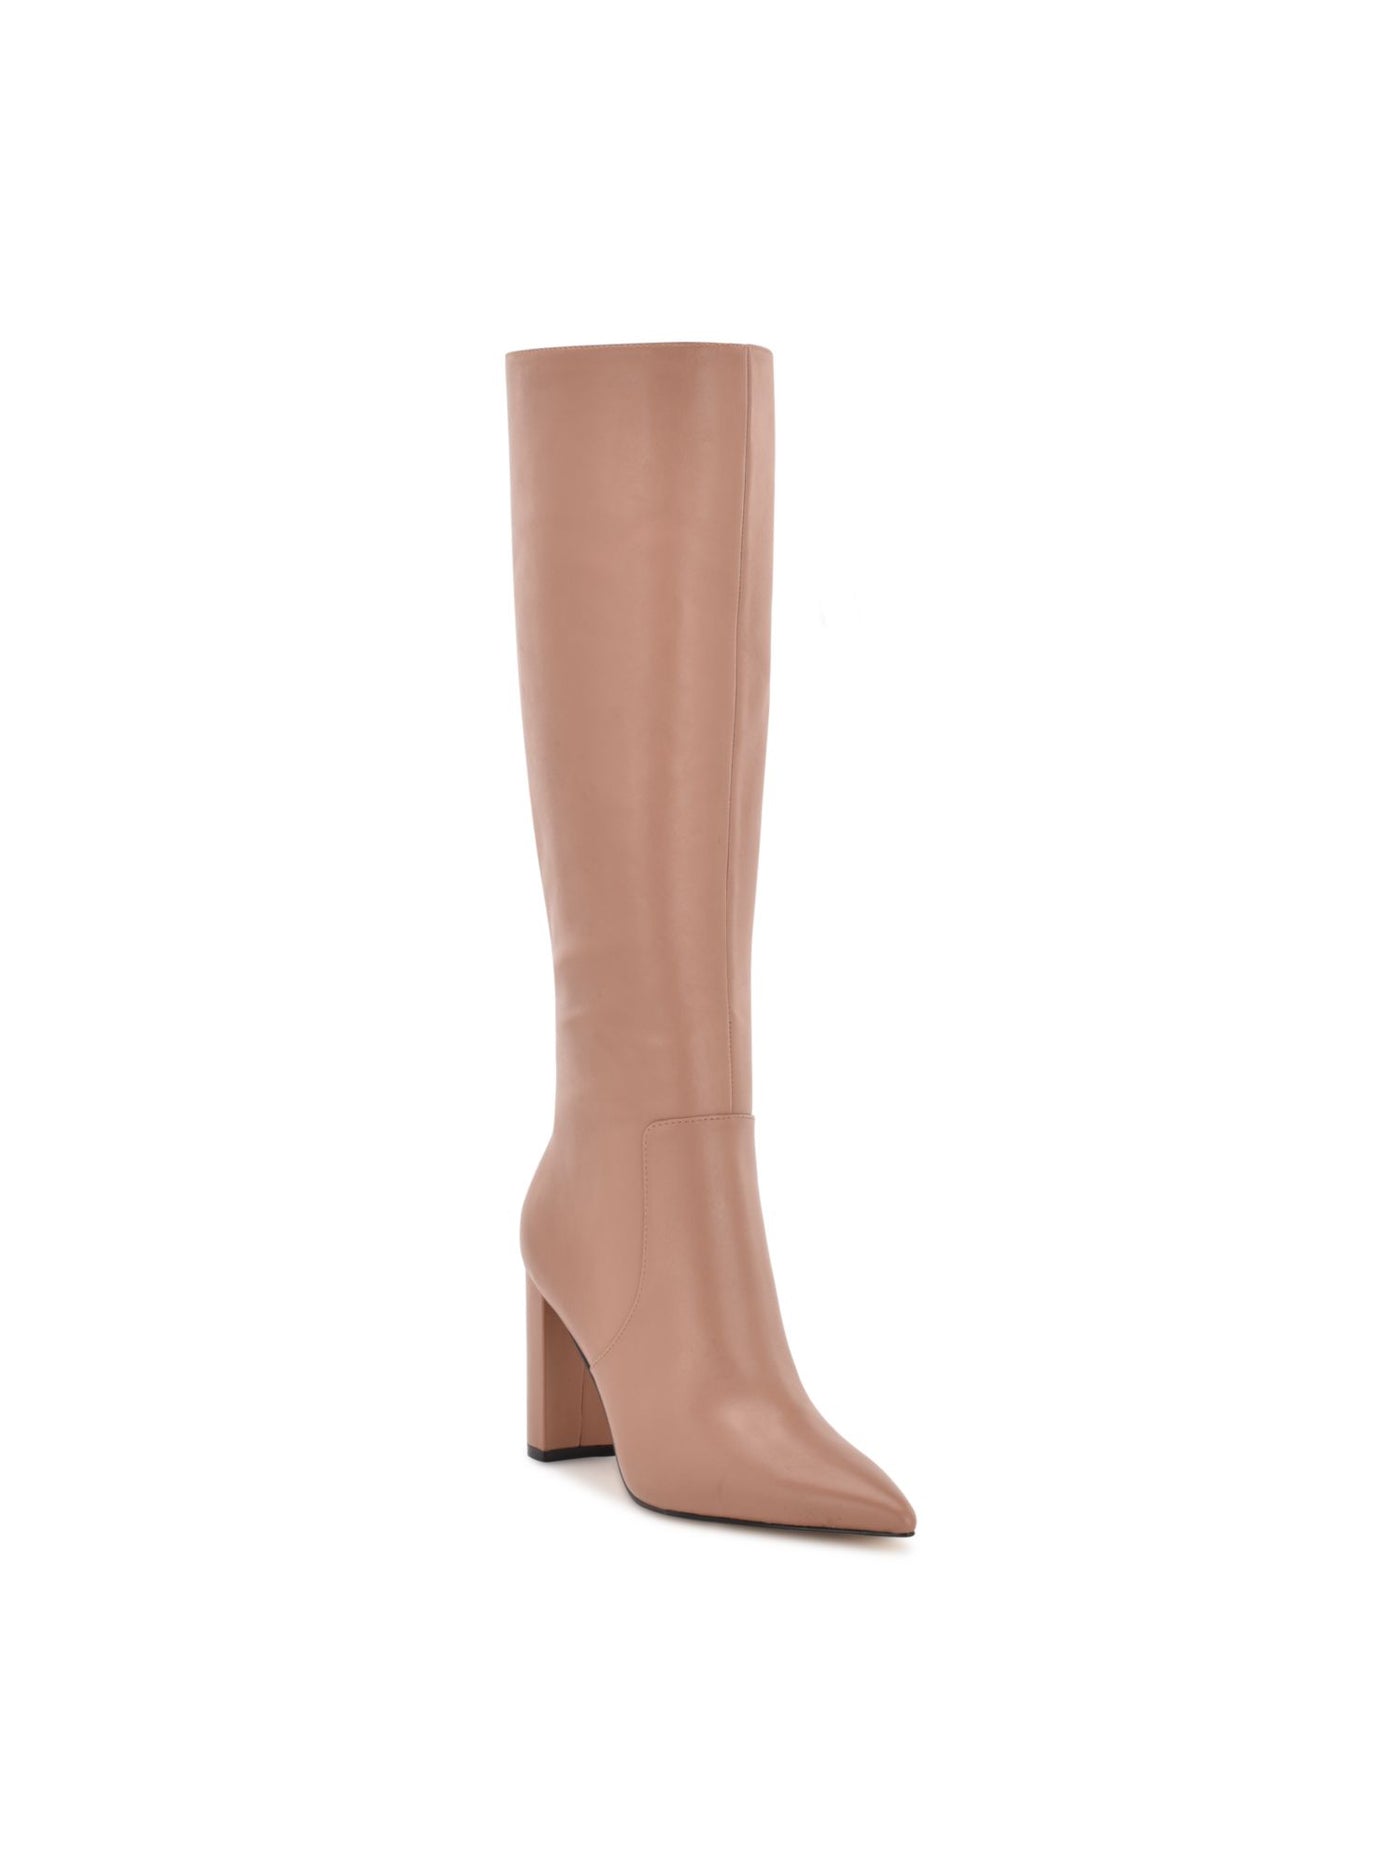 NINE WEST Womens Beige Comfort Danee Pointy Toe Block Heel Zip-Up Leather Boots Shoes 11 M WC